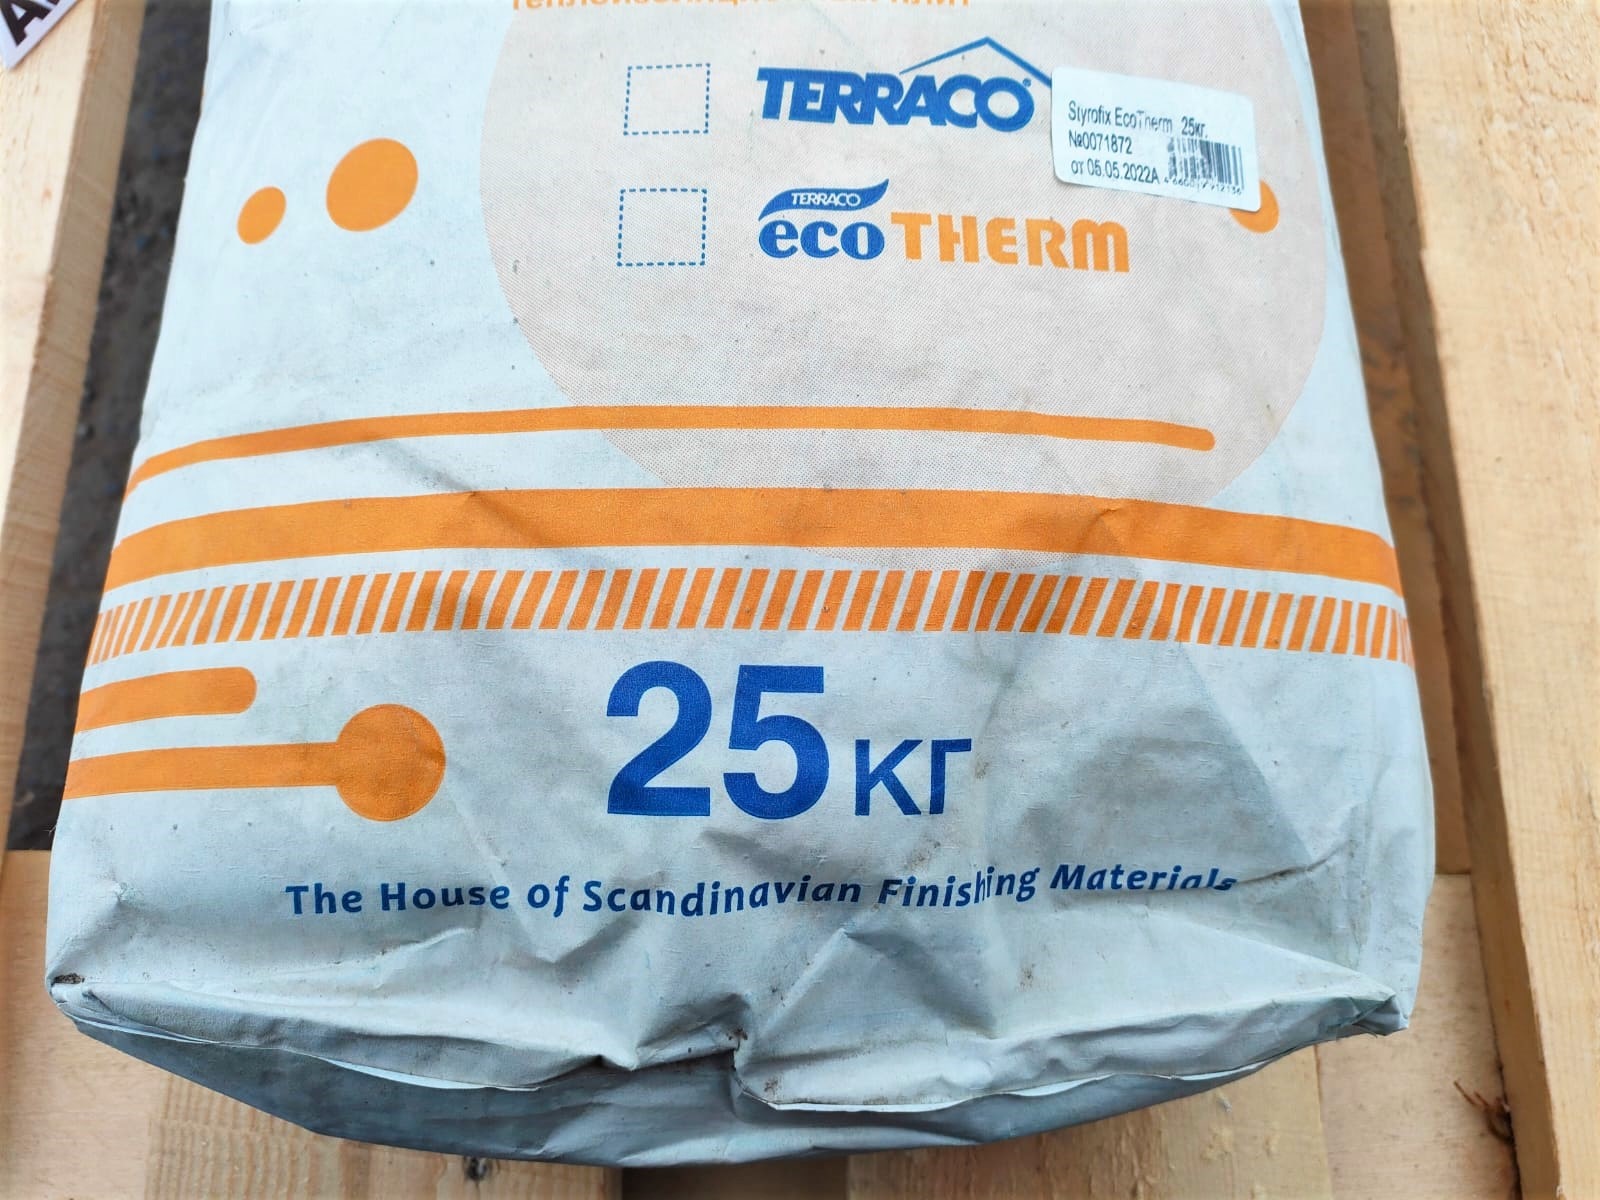 Клей для приклейки утеплителей (для коттеджного строительства) Styrofix EcoTherm 25 кг